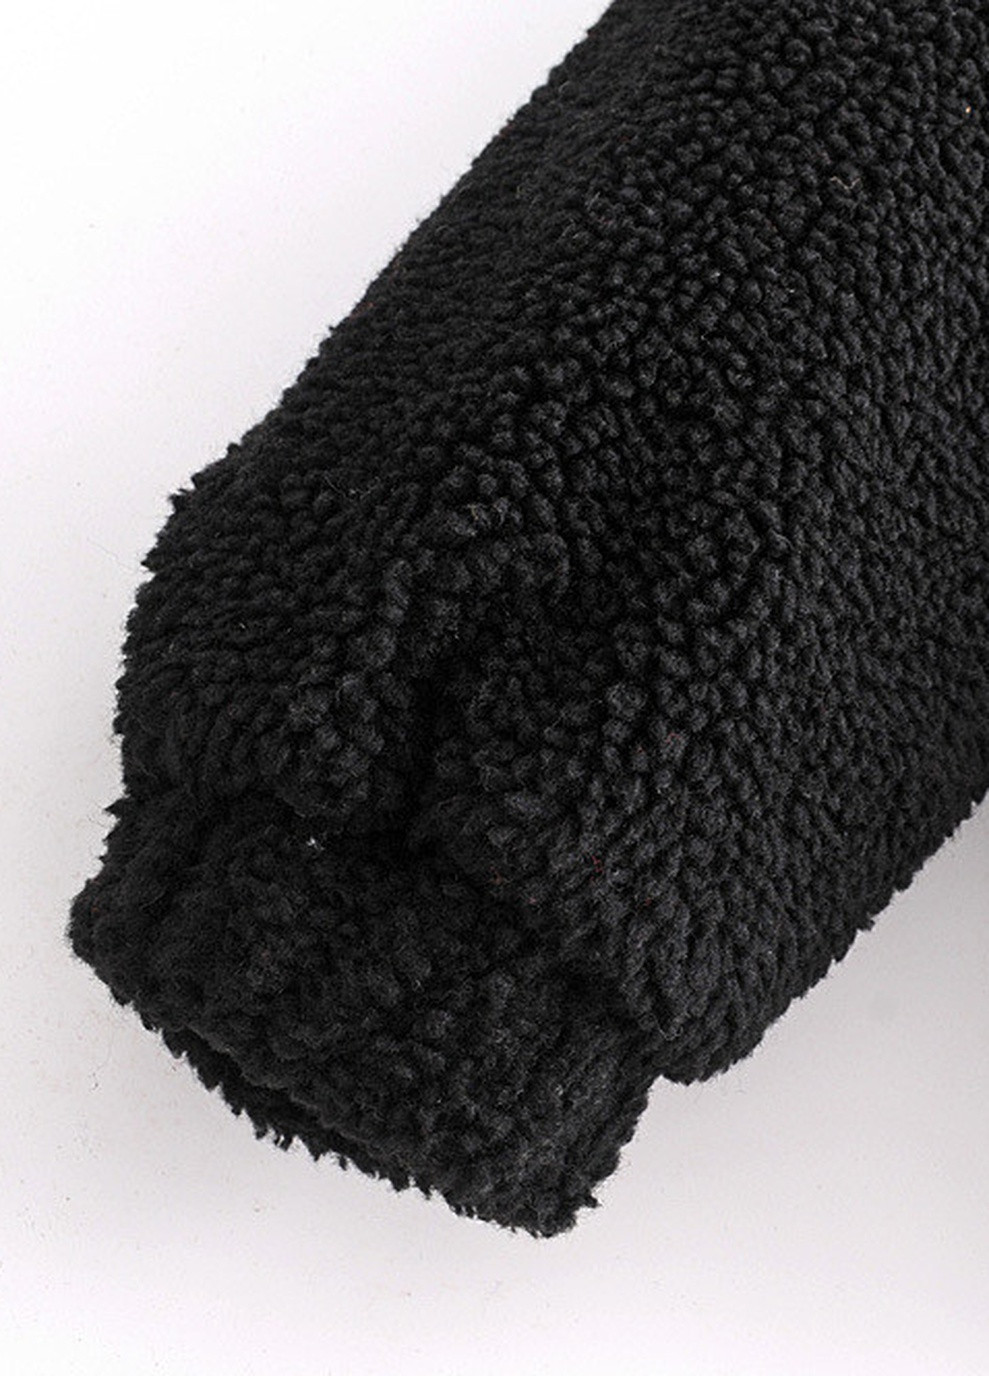 Черная демисезонная куртка женская из искусственного меха furry, черный Berni Fashion 55596